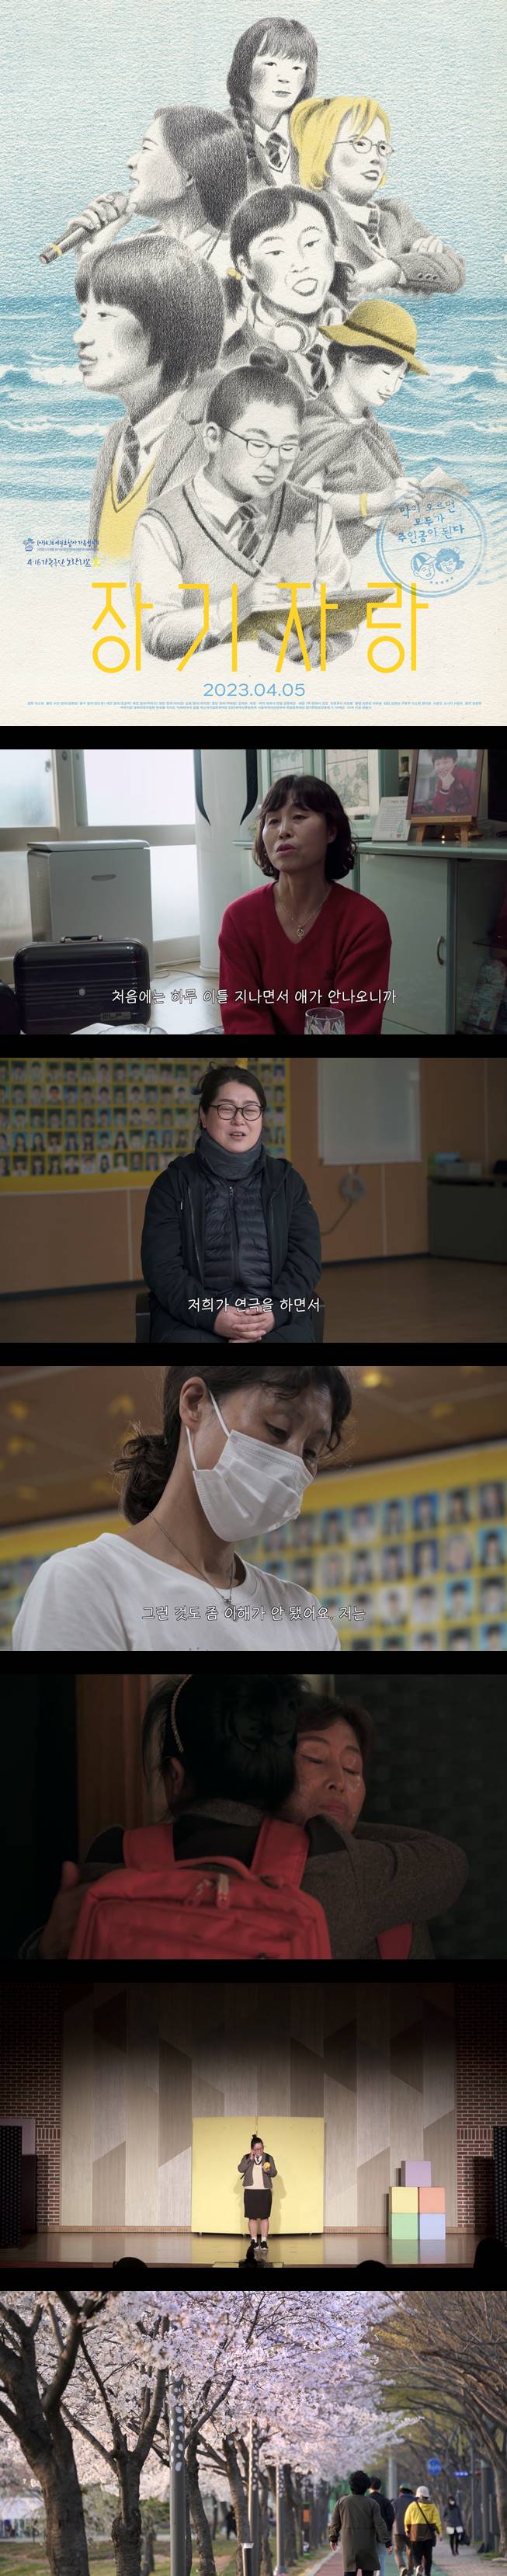 [장기자랑] SD 세월호 참사 생존자와 가족의 이야기